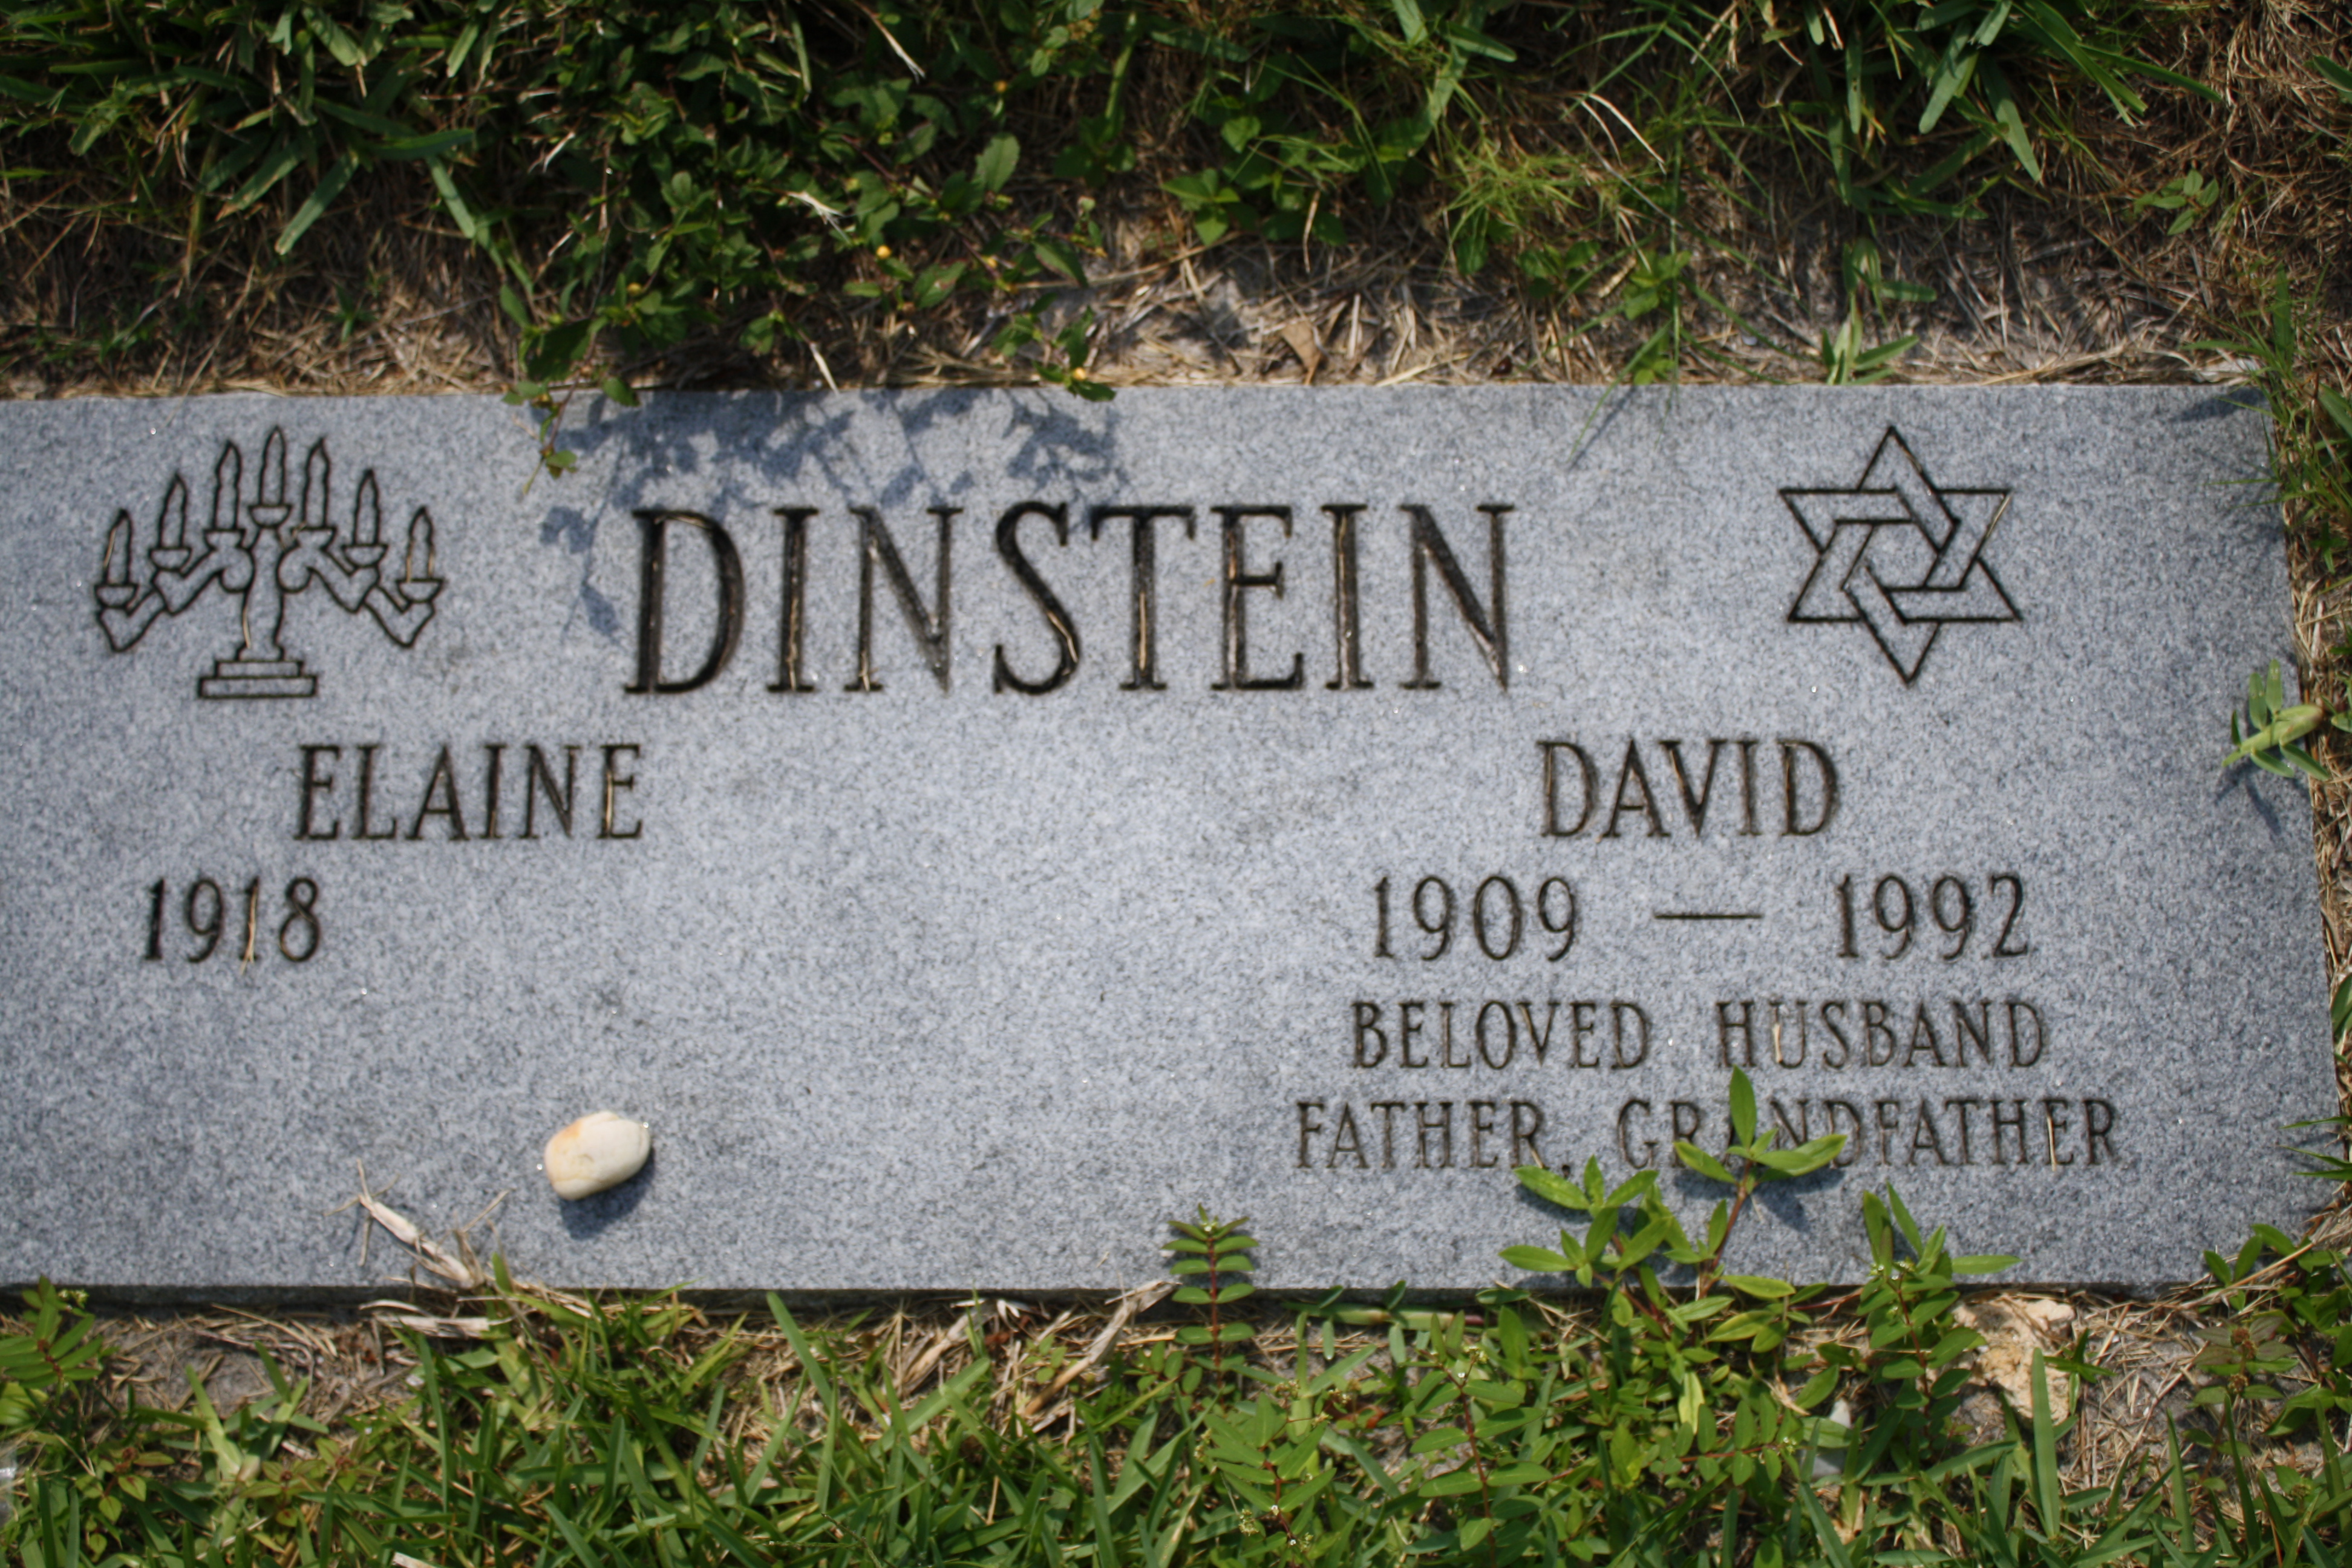 David Dinstein